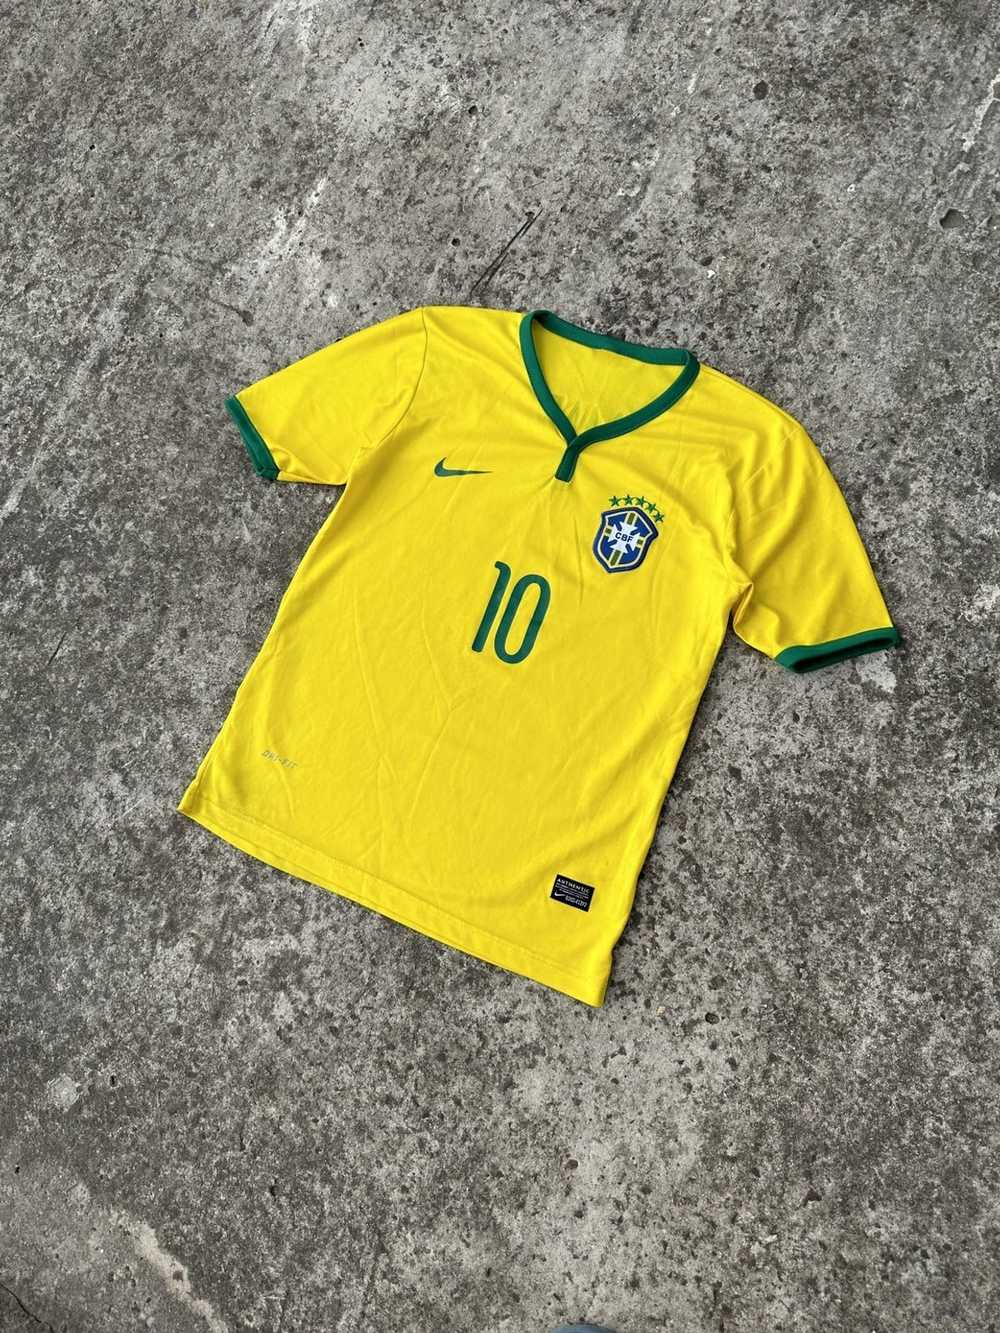 Soccer Jersey × Sportswear × Streetwear Nike Braz… - image 2